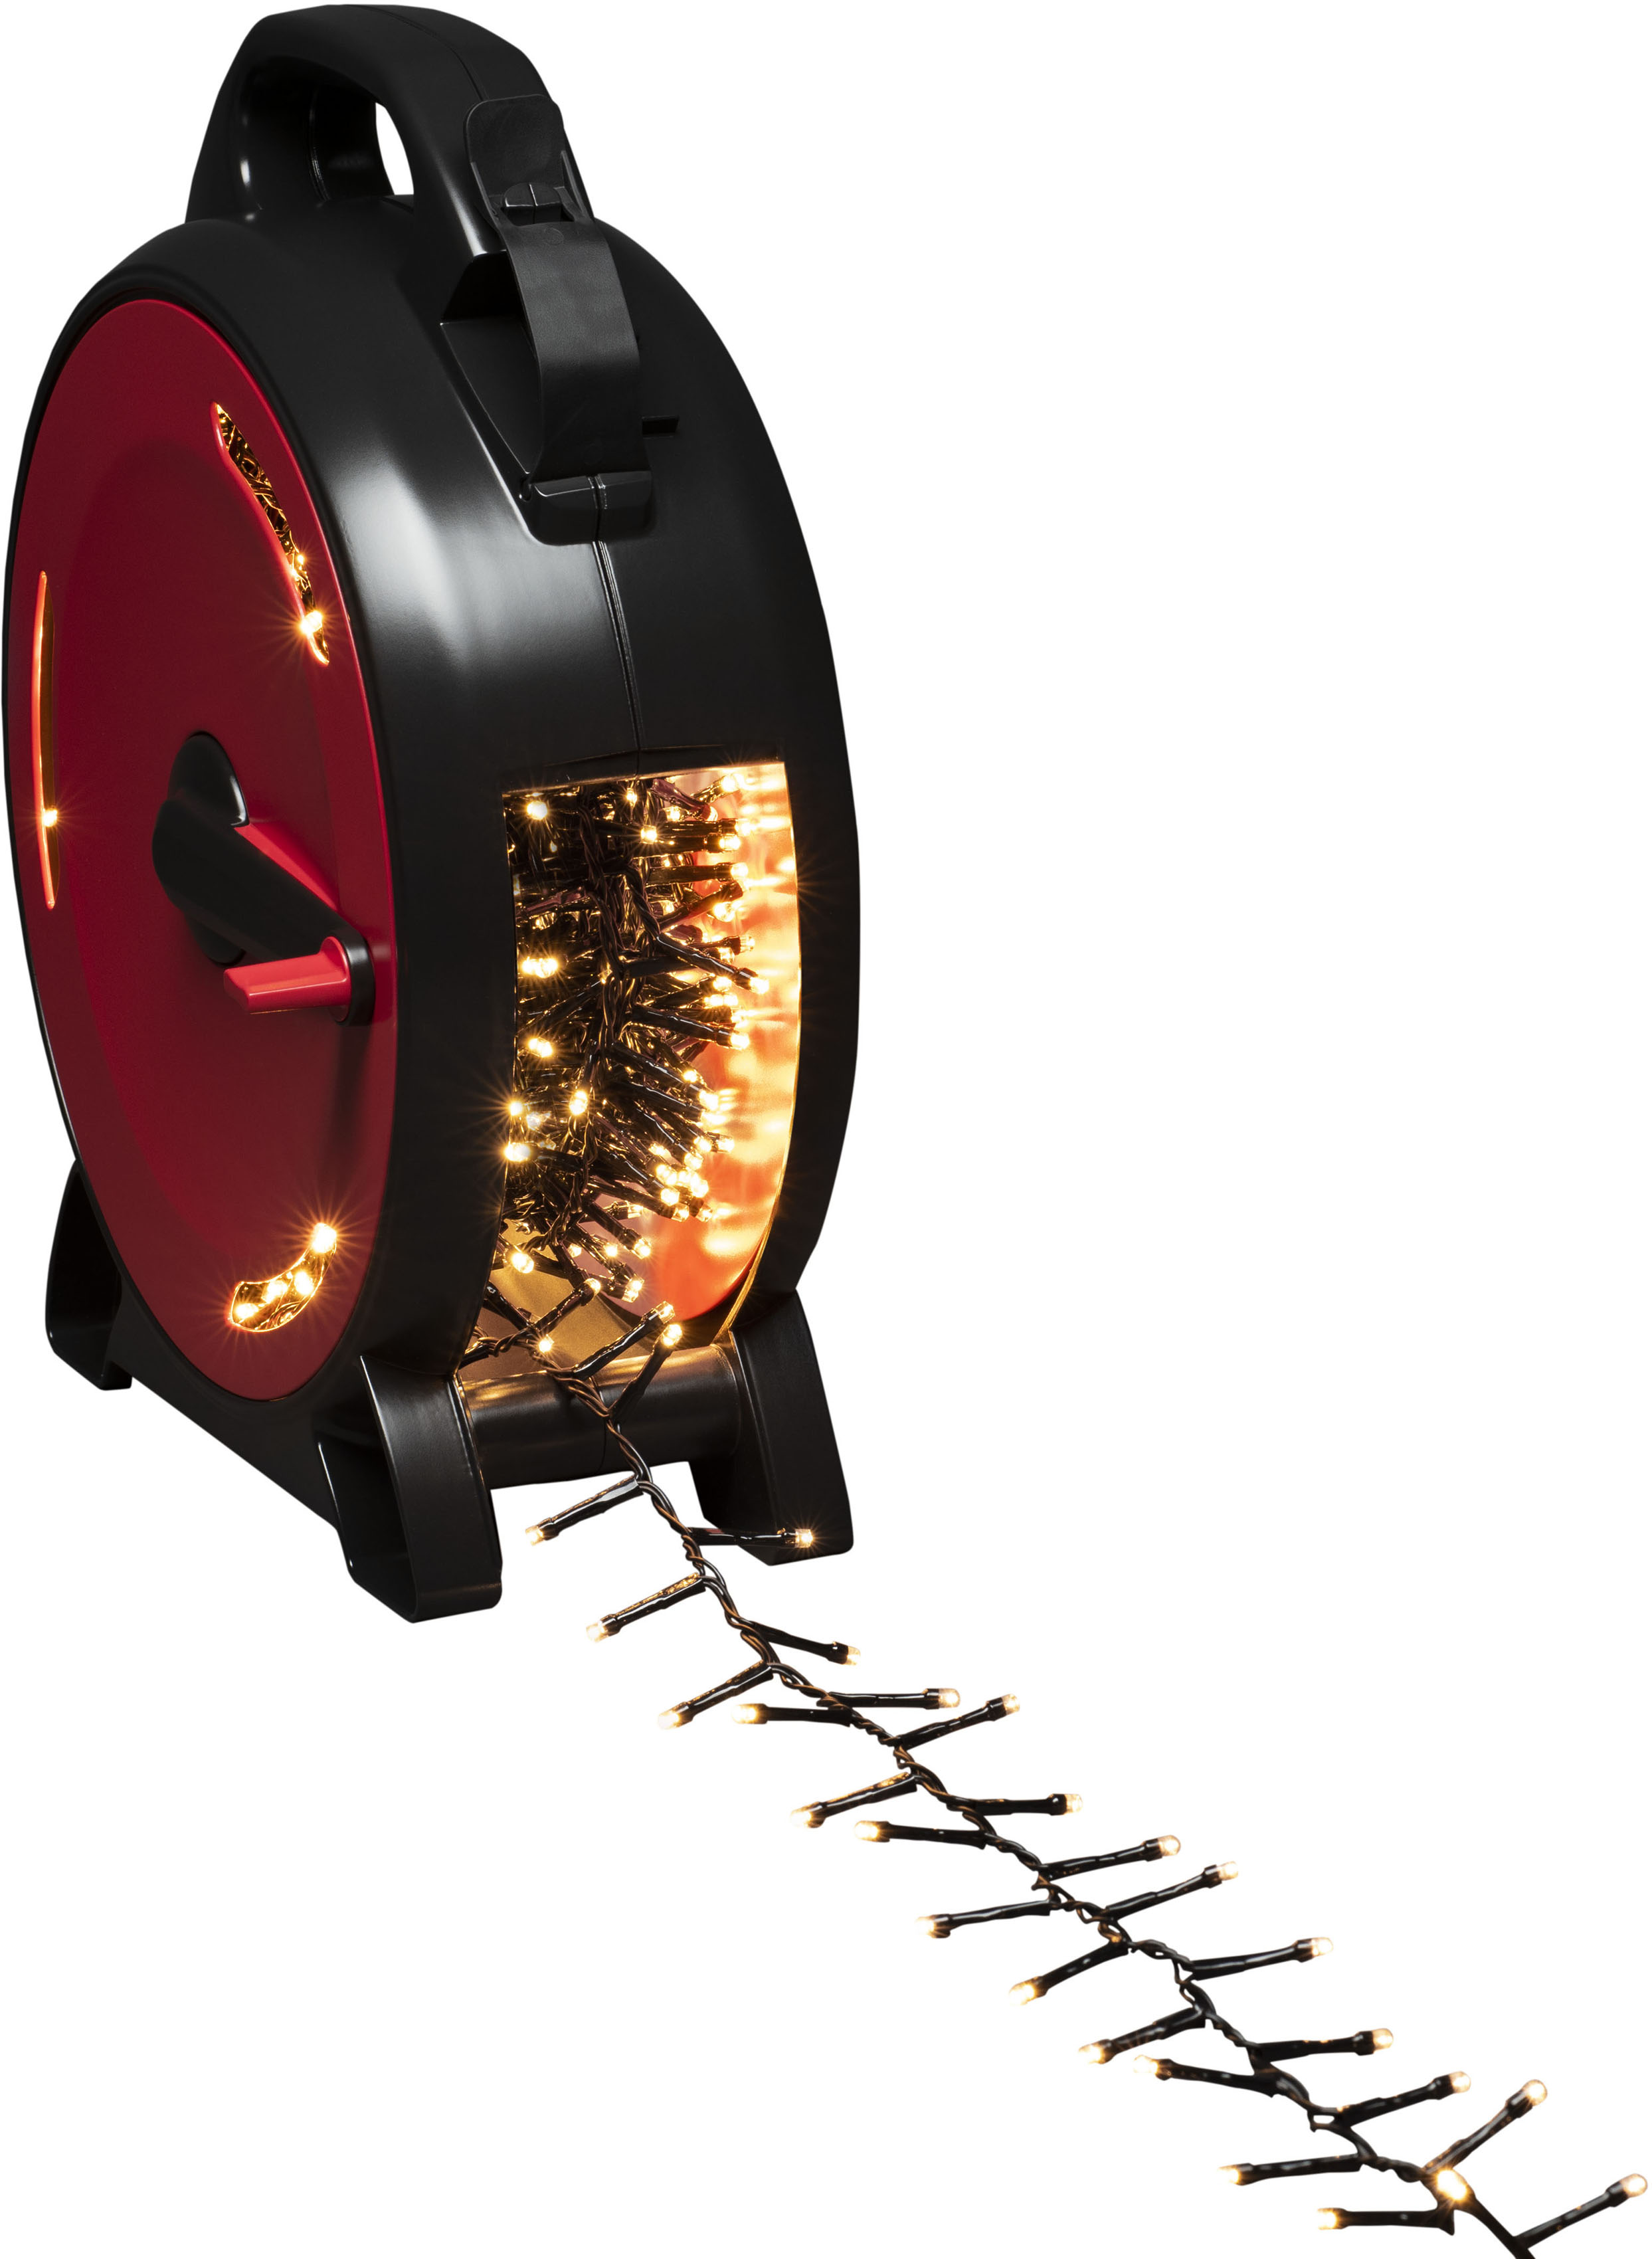 Star-Max LED-Lichtervorhang »Weihnachtsdeko aussen«, 200 St.-flammig, mit  Sternen und Schneeflocken Motiven, 200 LEDs, In- und Outdoor auf Raten  kaufen